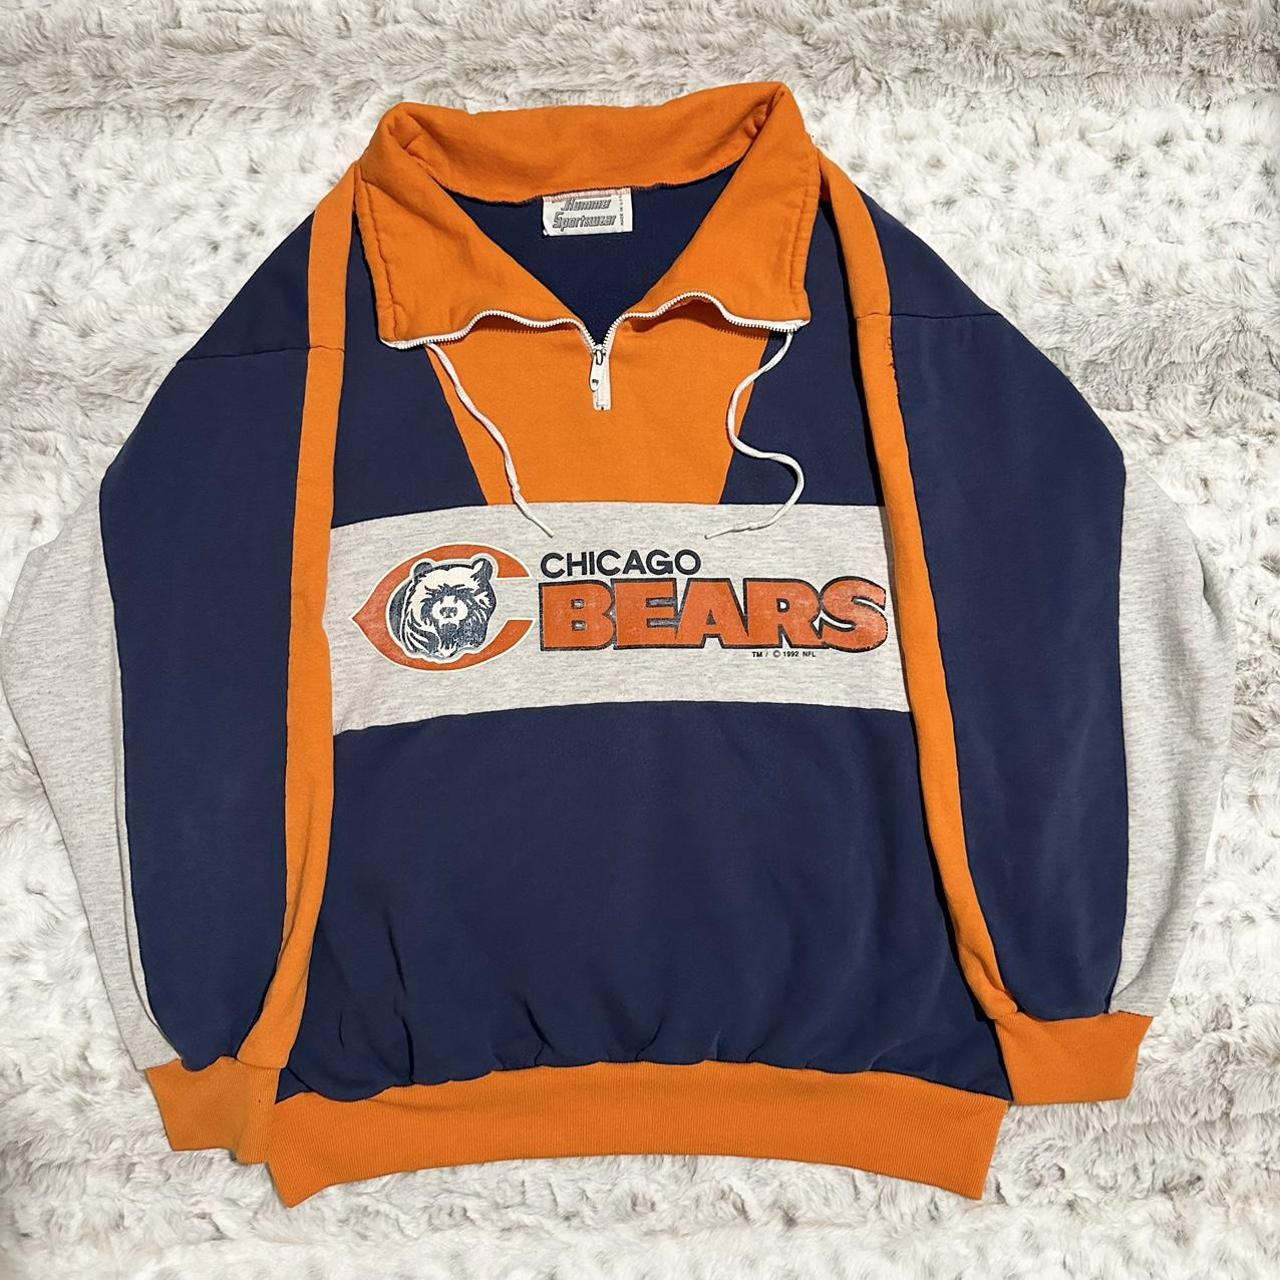 Vintage 1991 Chicago Bears Lightweight Jacket! I’m... - Depop